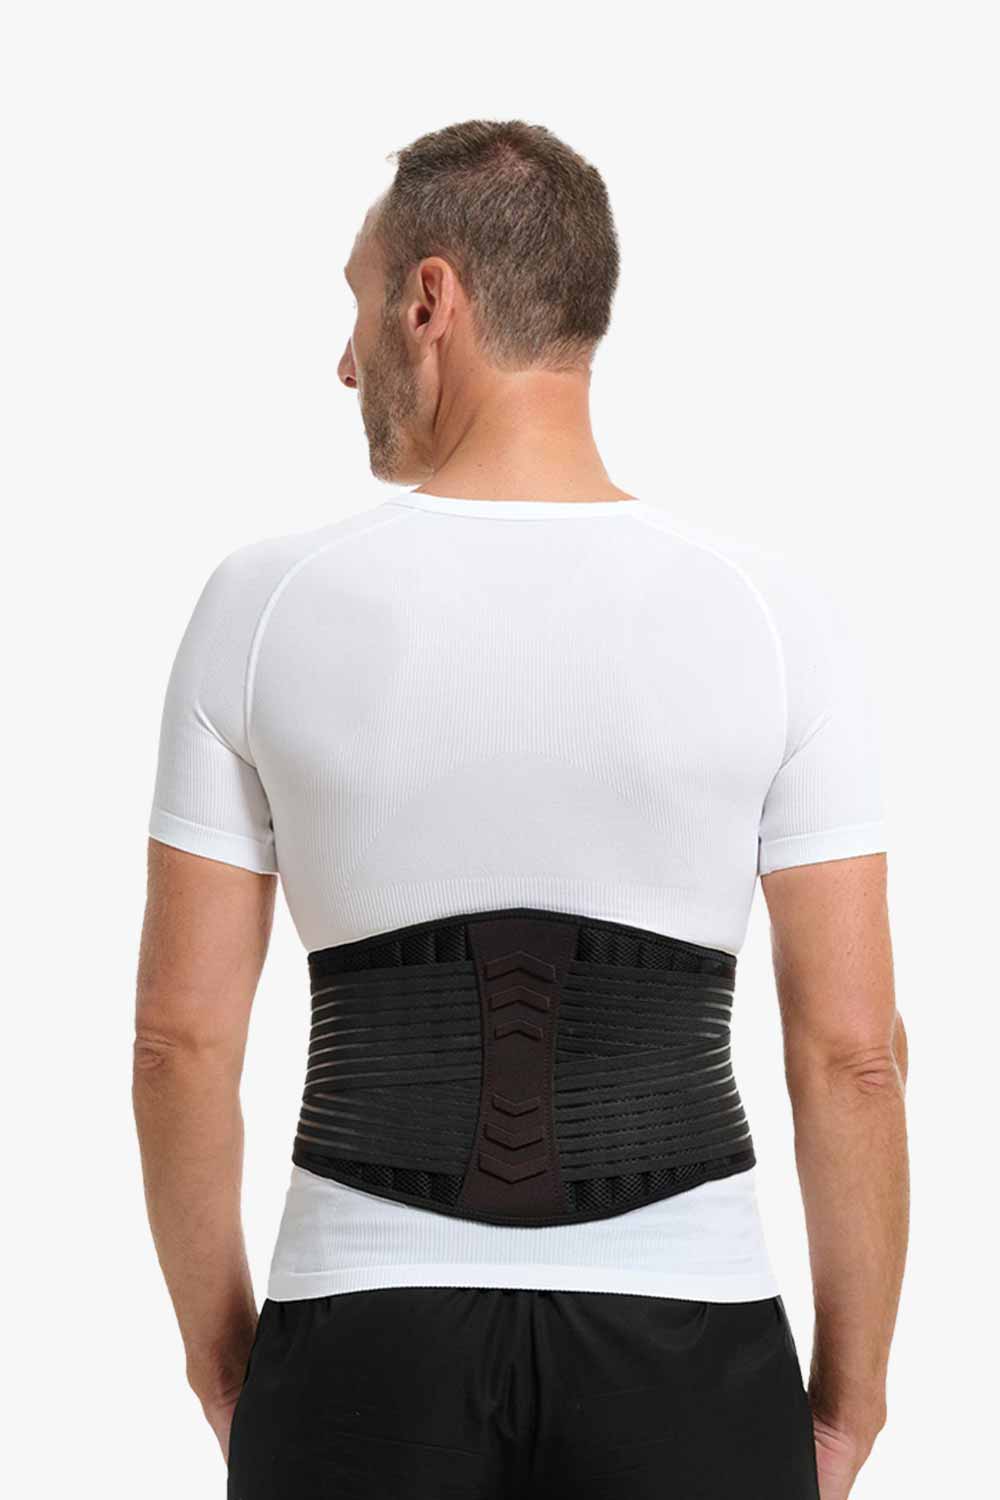 Lumbar support belt